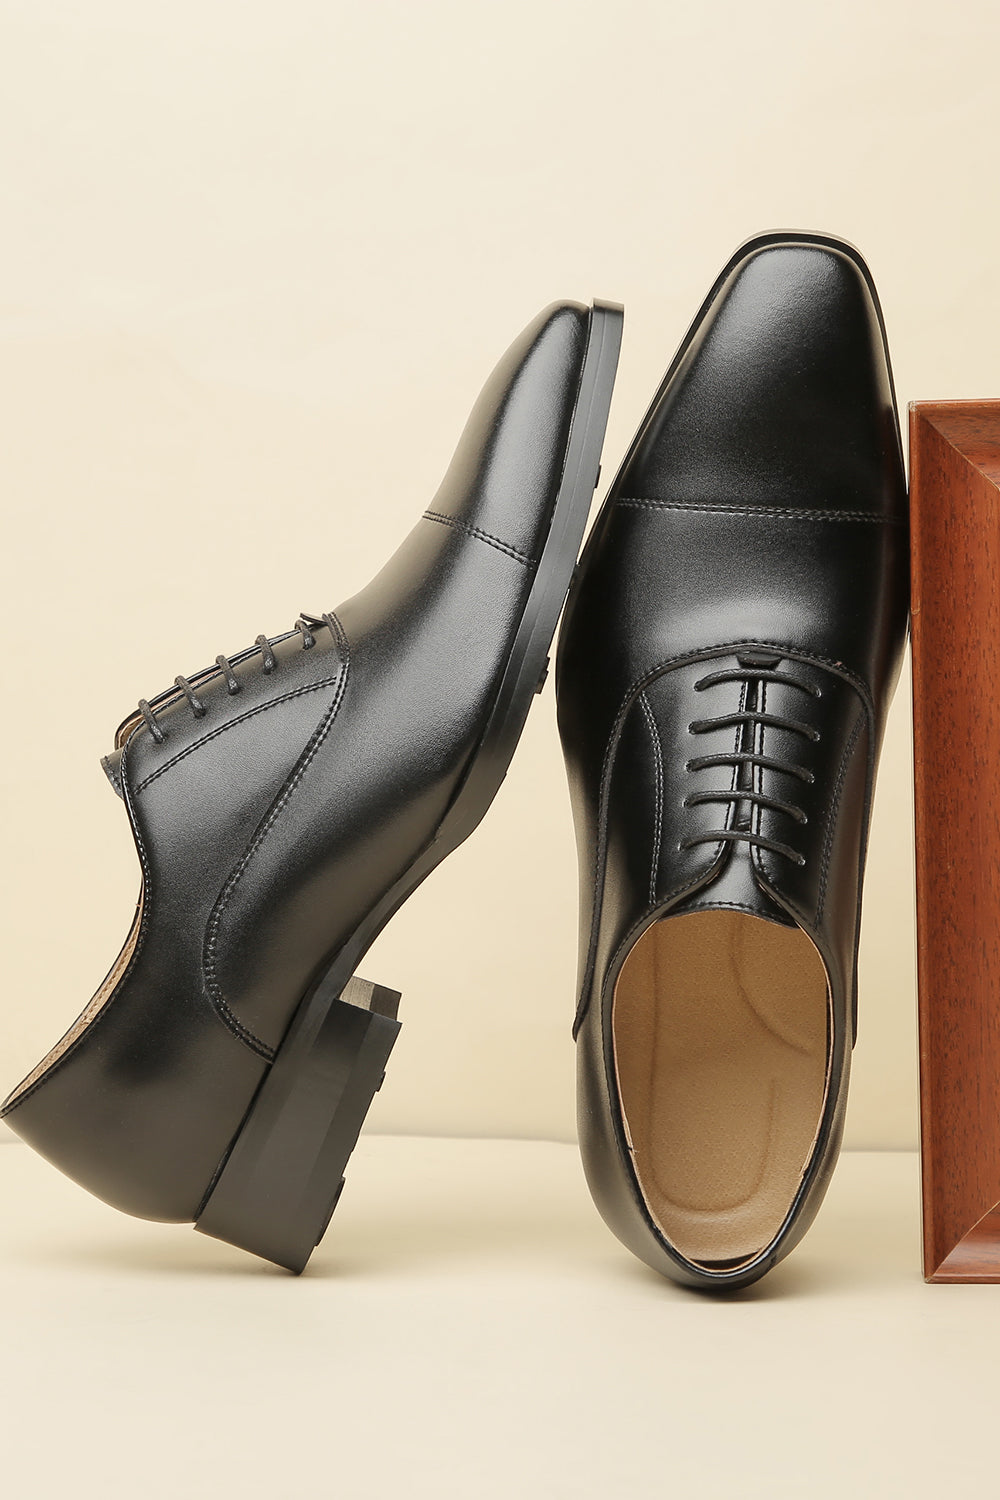 Black Men's Leather Slip-On Formal Shoes